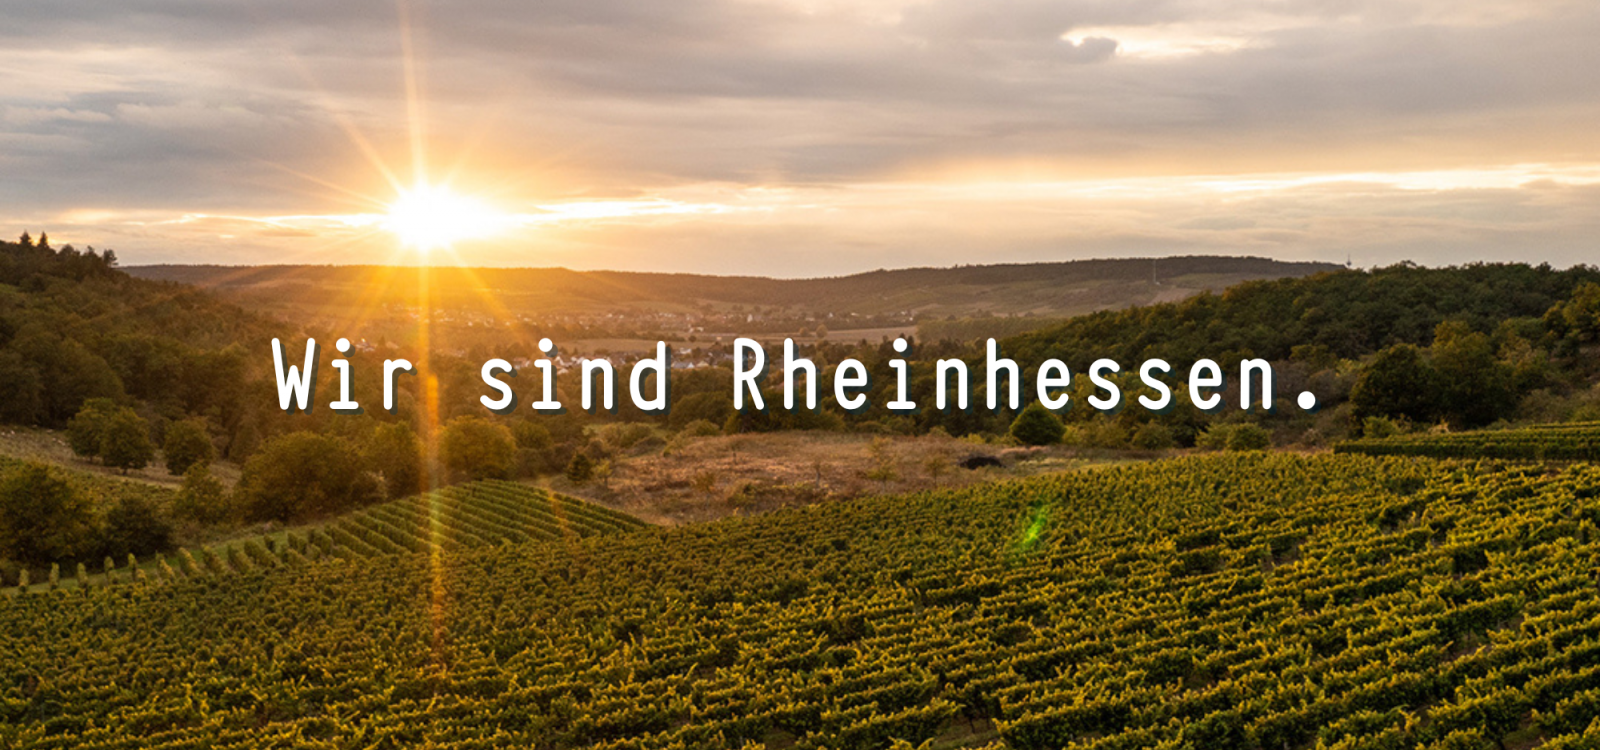 We are Rheinhessen